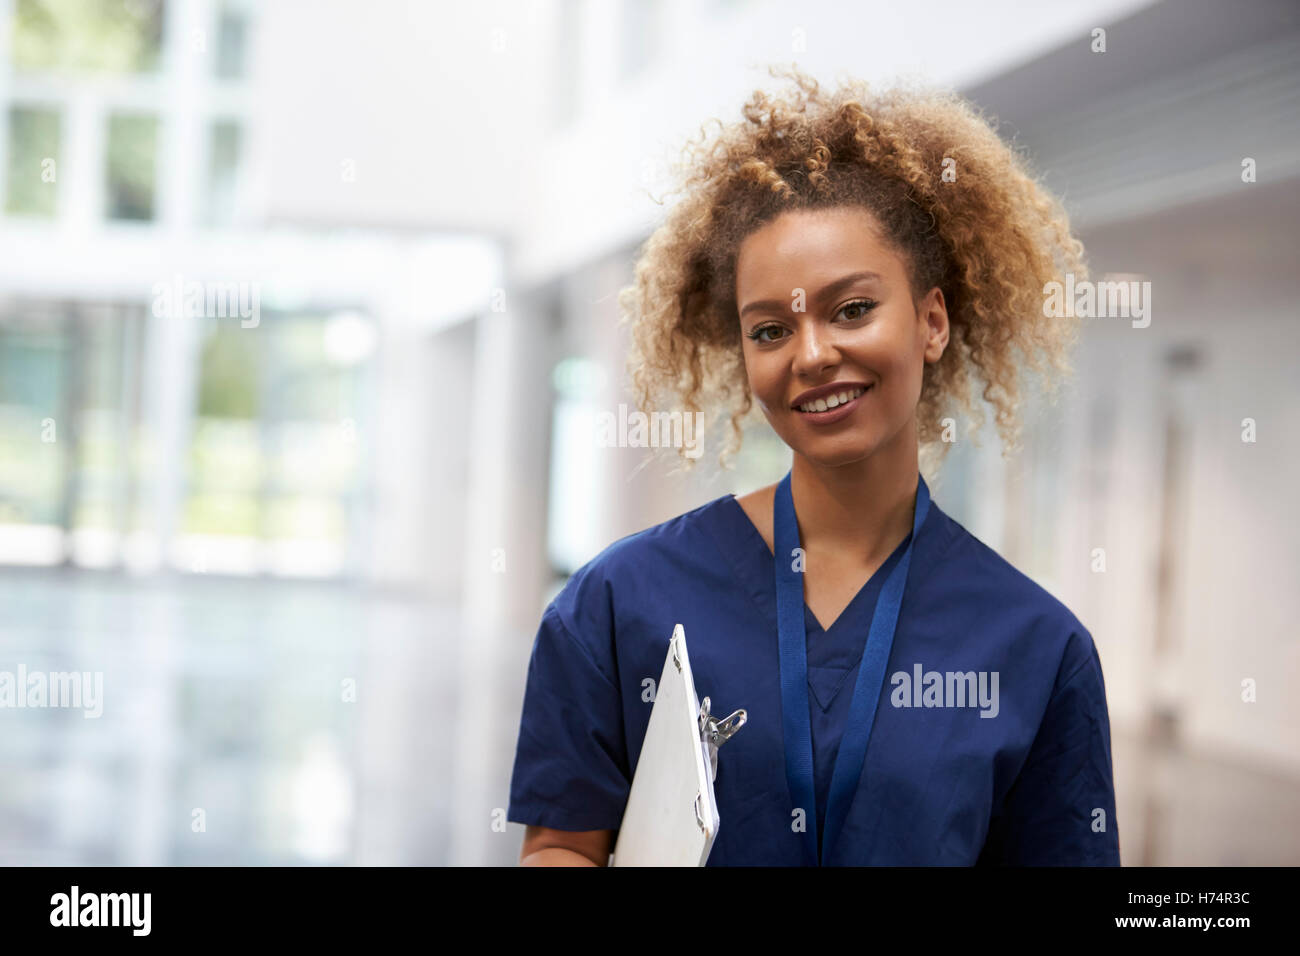 Portrait Of Female Nurse Wearing Scrubs In Hospital Stock Photo